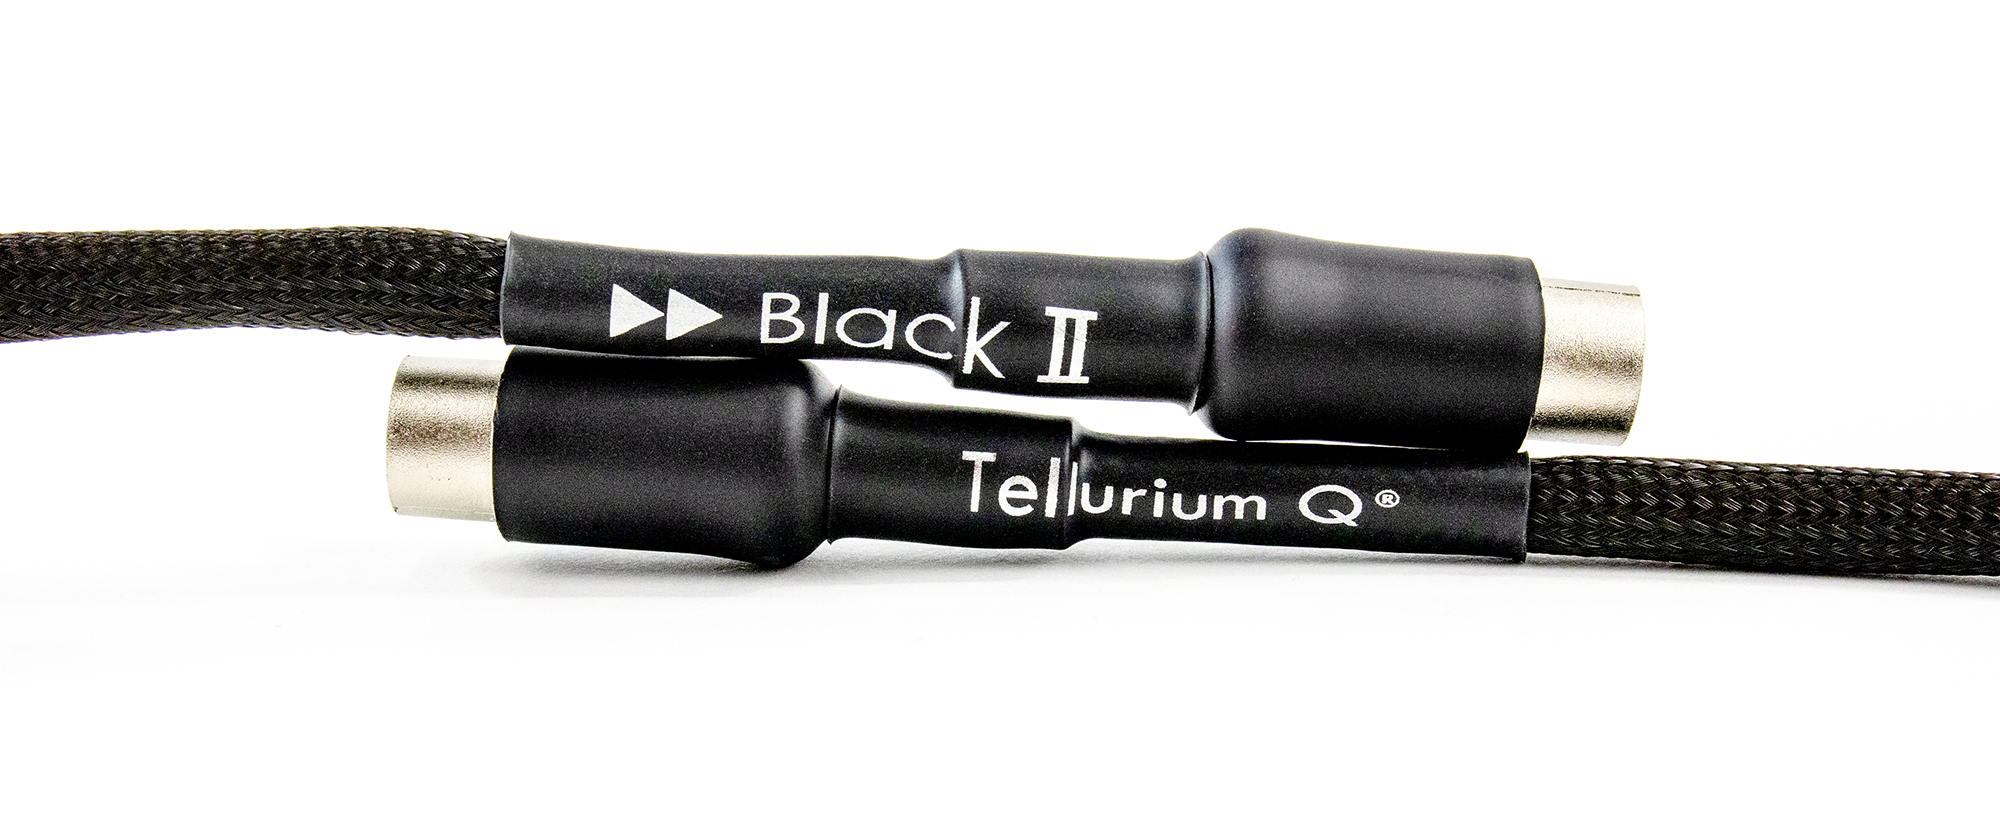 Tellurium Q | Black II | DIN 5